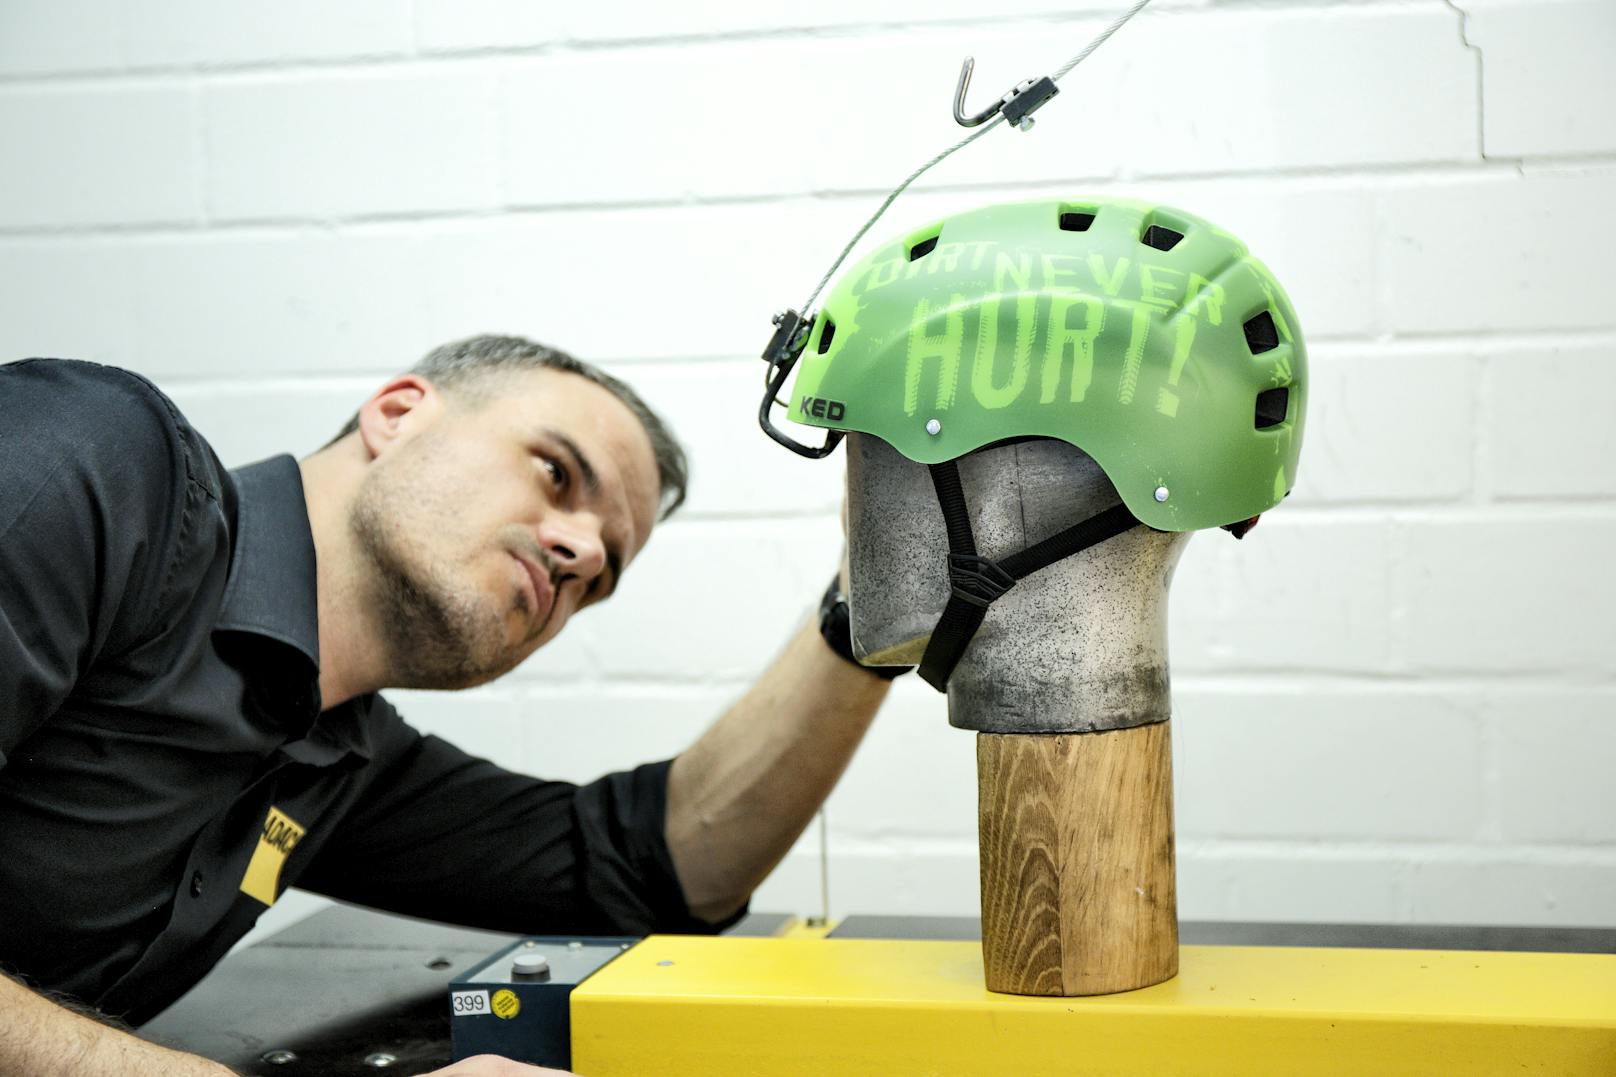 Der ÖAMTC hat 10 Helme für Jugendlich getestet. Unter den besten Modellen befindet sich eines der günstigsten Produkte.